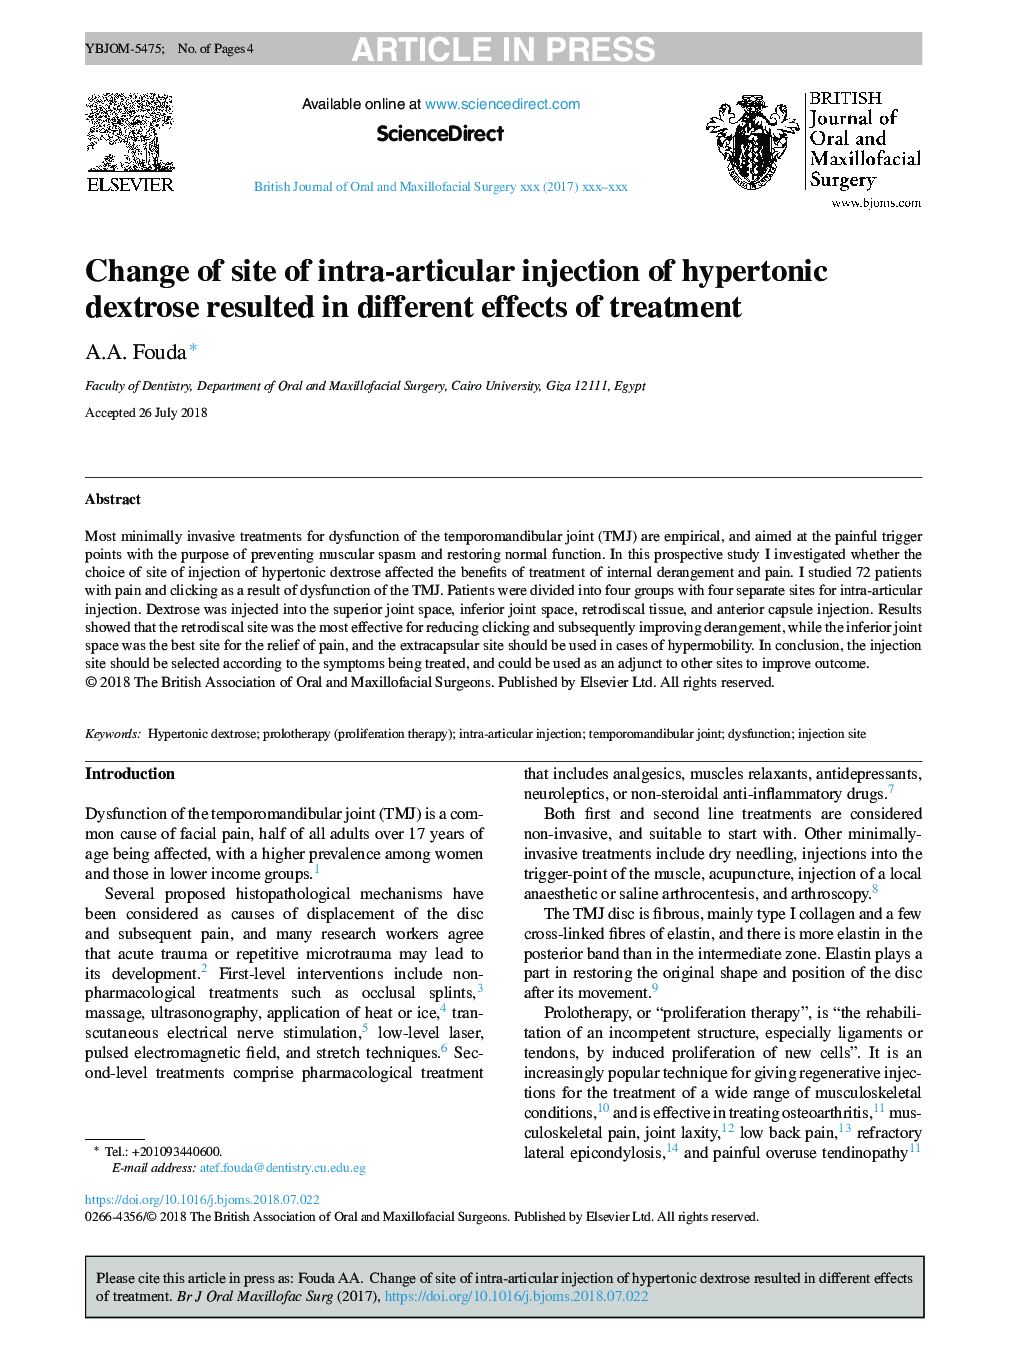 تغییر محل تزریق داخل مفصلی دکستروز هیپرتونیک منجر به اثرات مختلف درمان شد